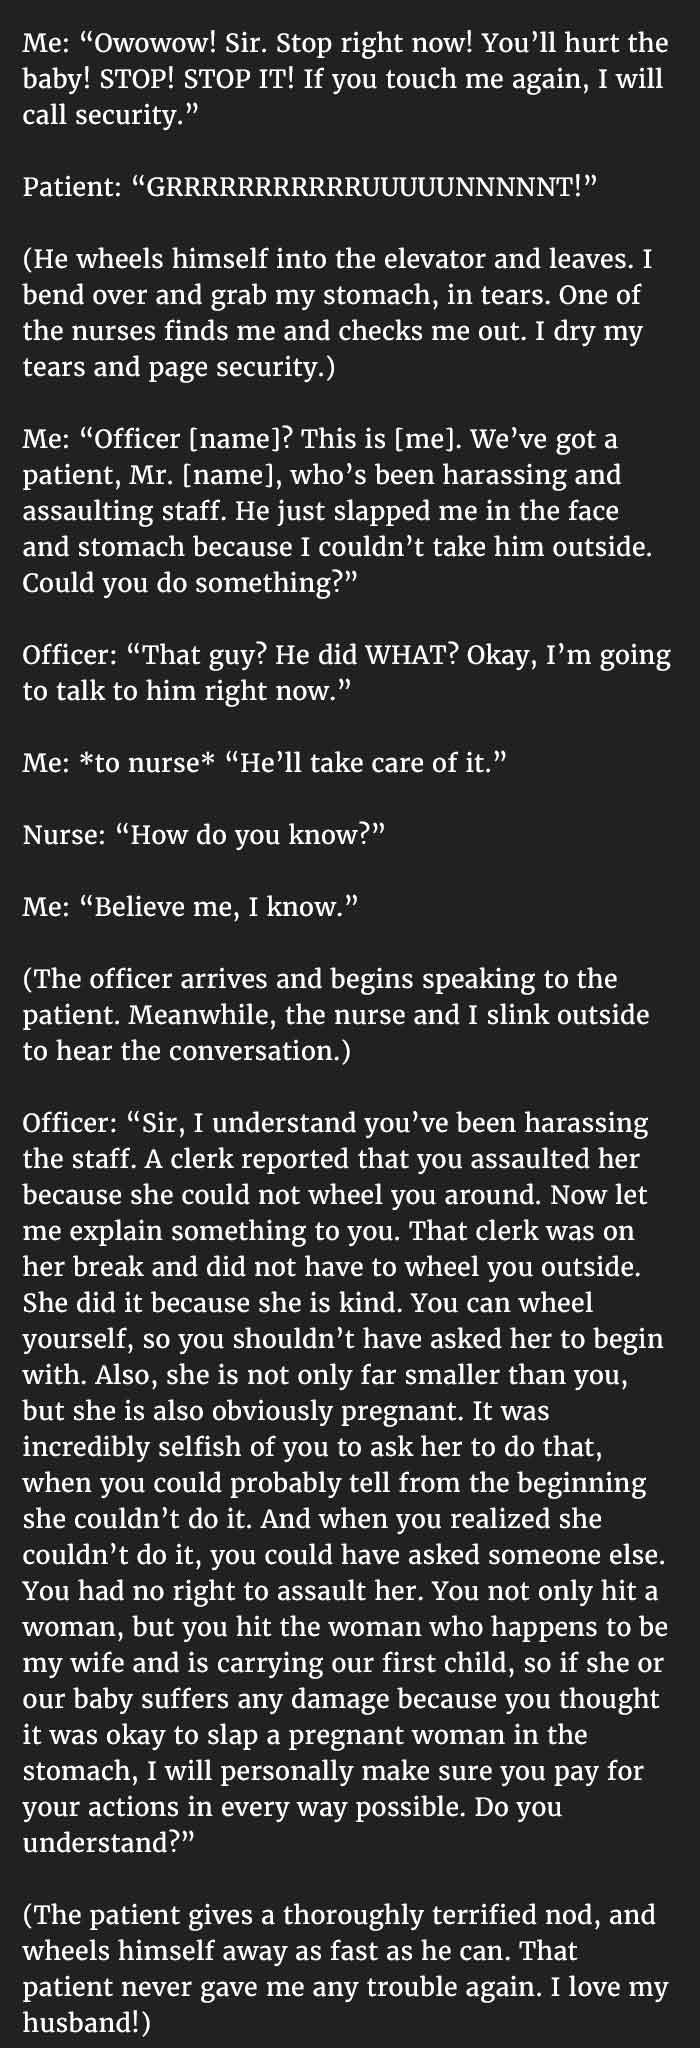 nurse2